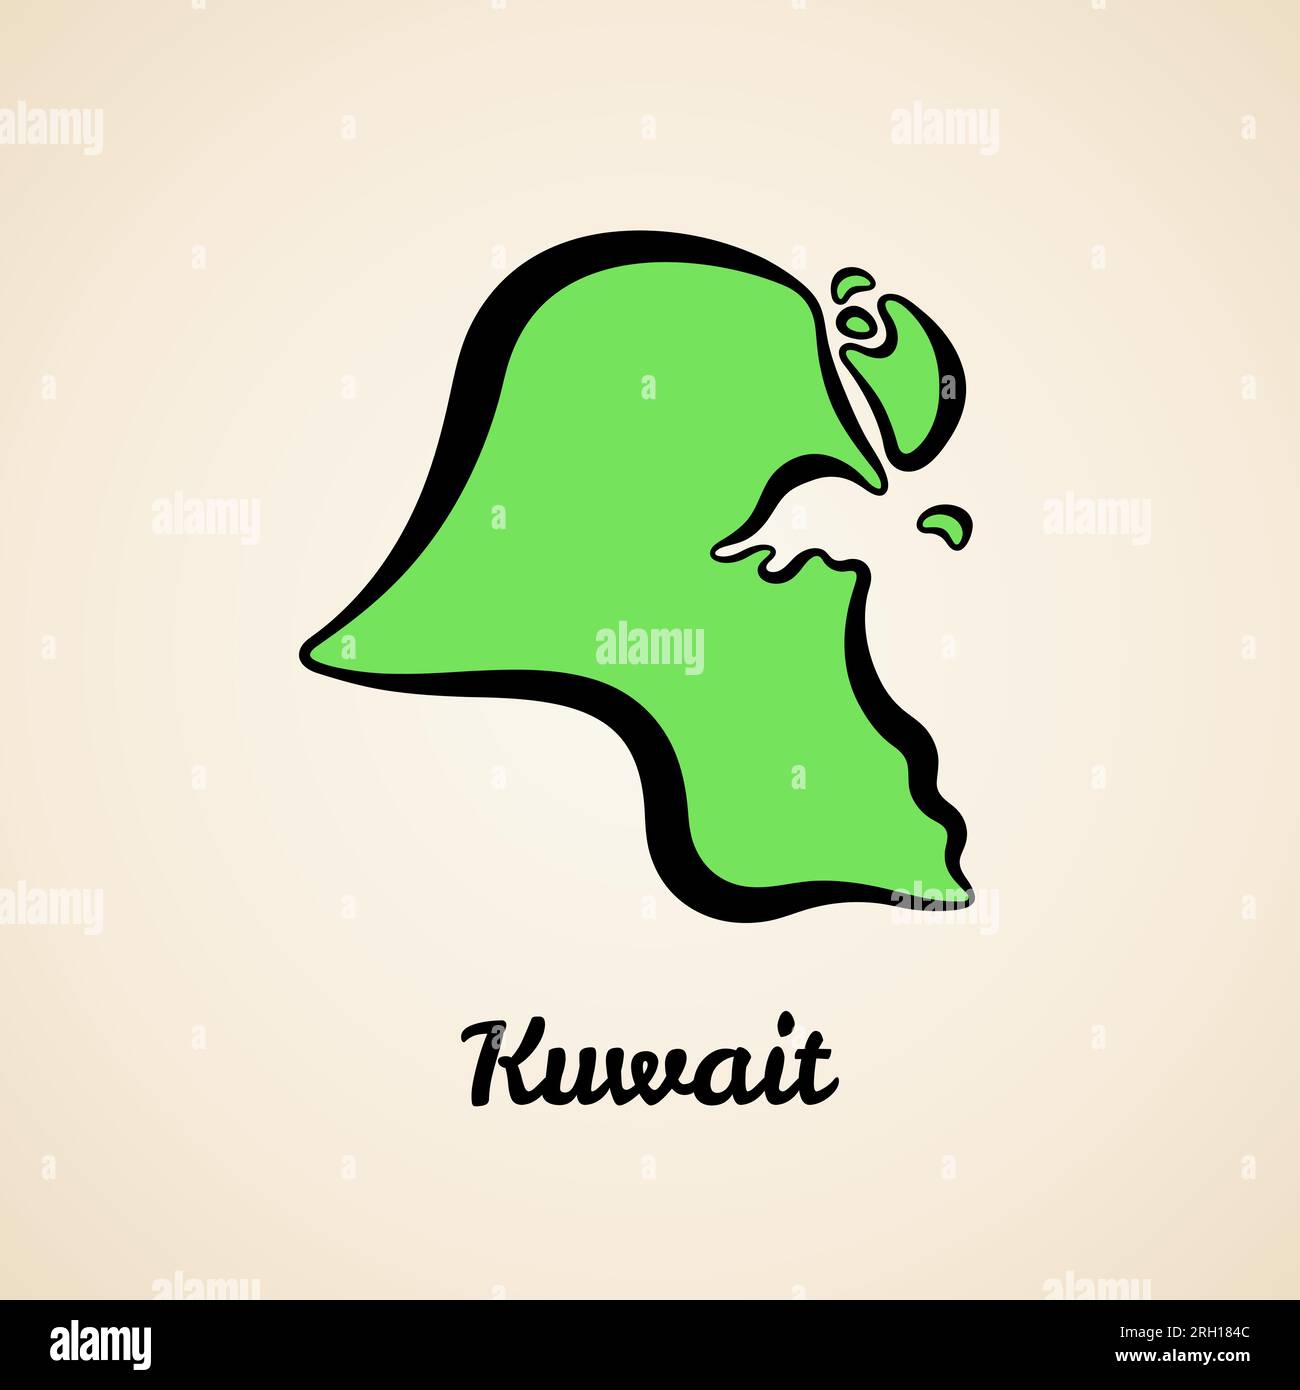 Grüne vereinfachte Karte von Kuwait mit schwarzer Umrandung. Stock Vektor